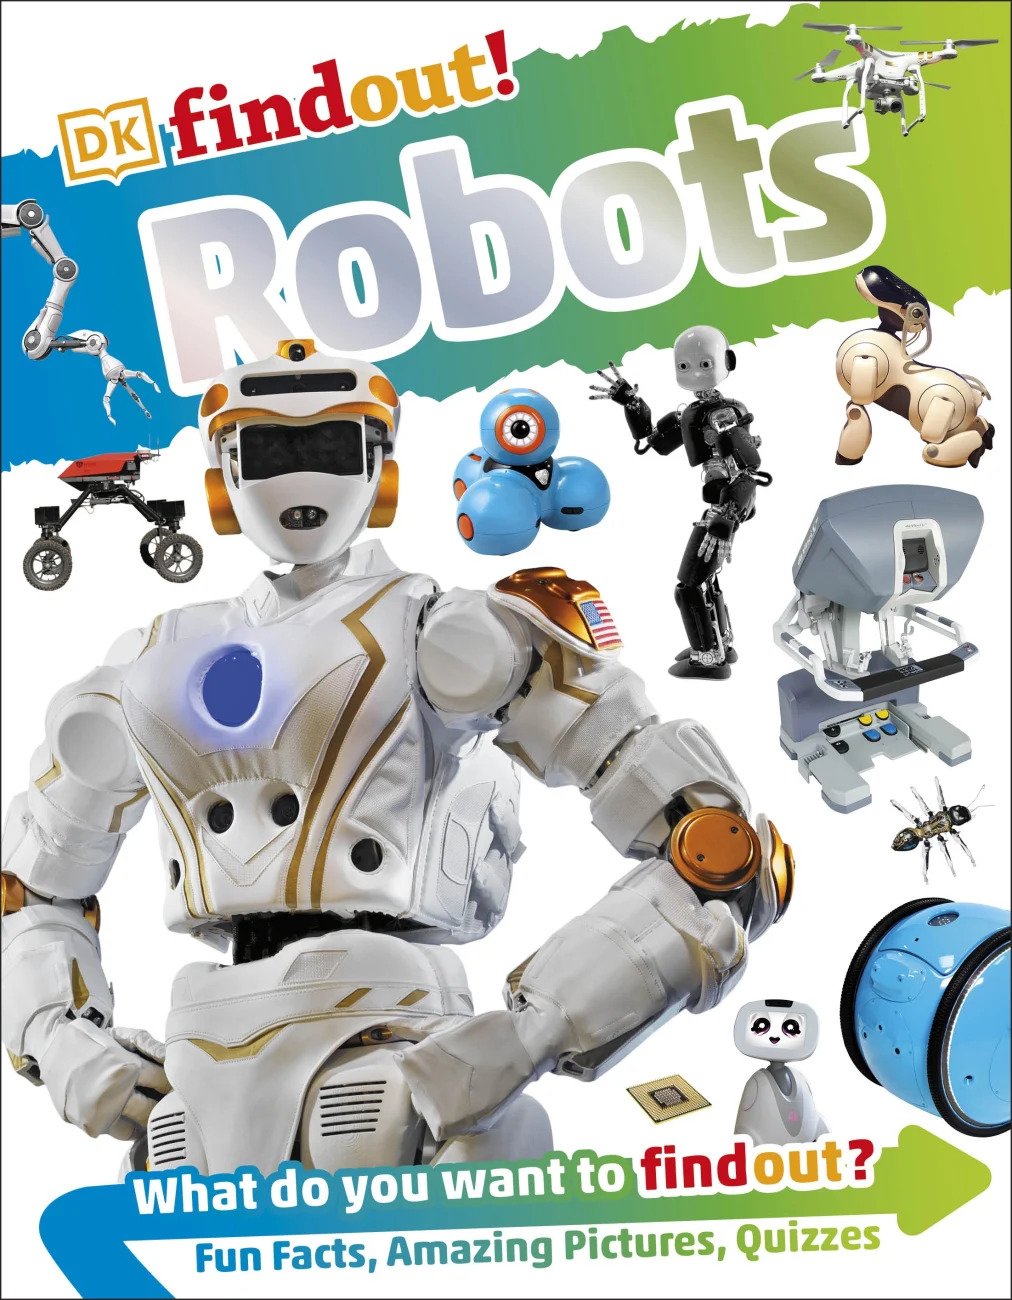 Читать про робота. Роботы обложка. I Robot книга. Robot reading. Lepora Nathan Dr "Robots".